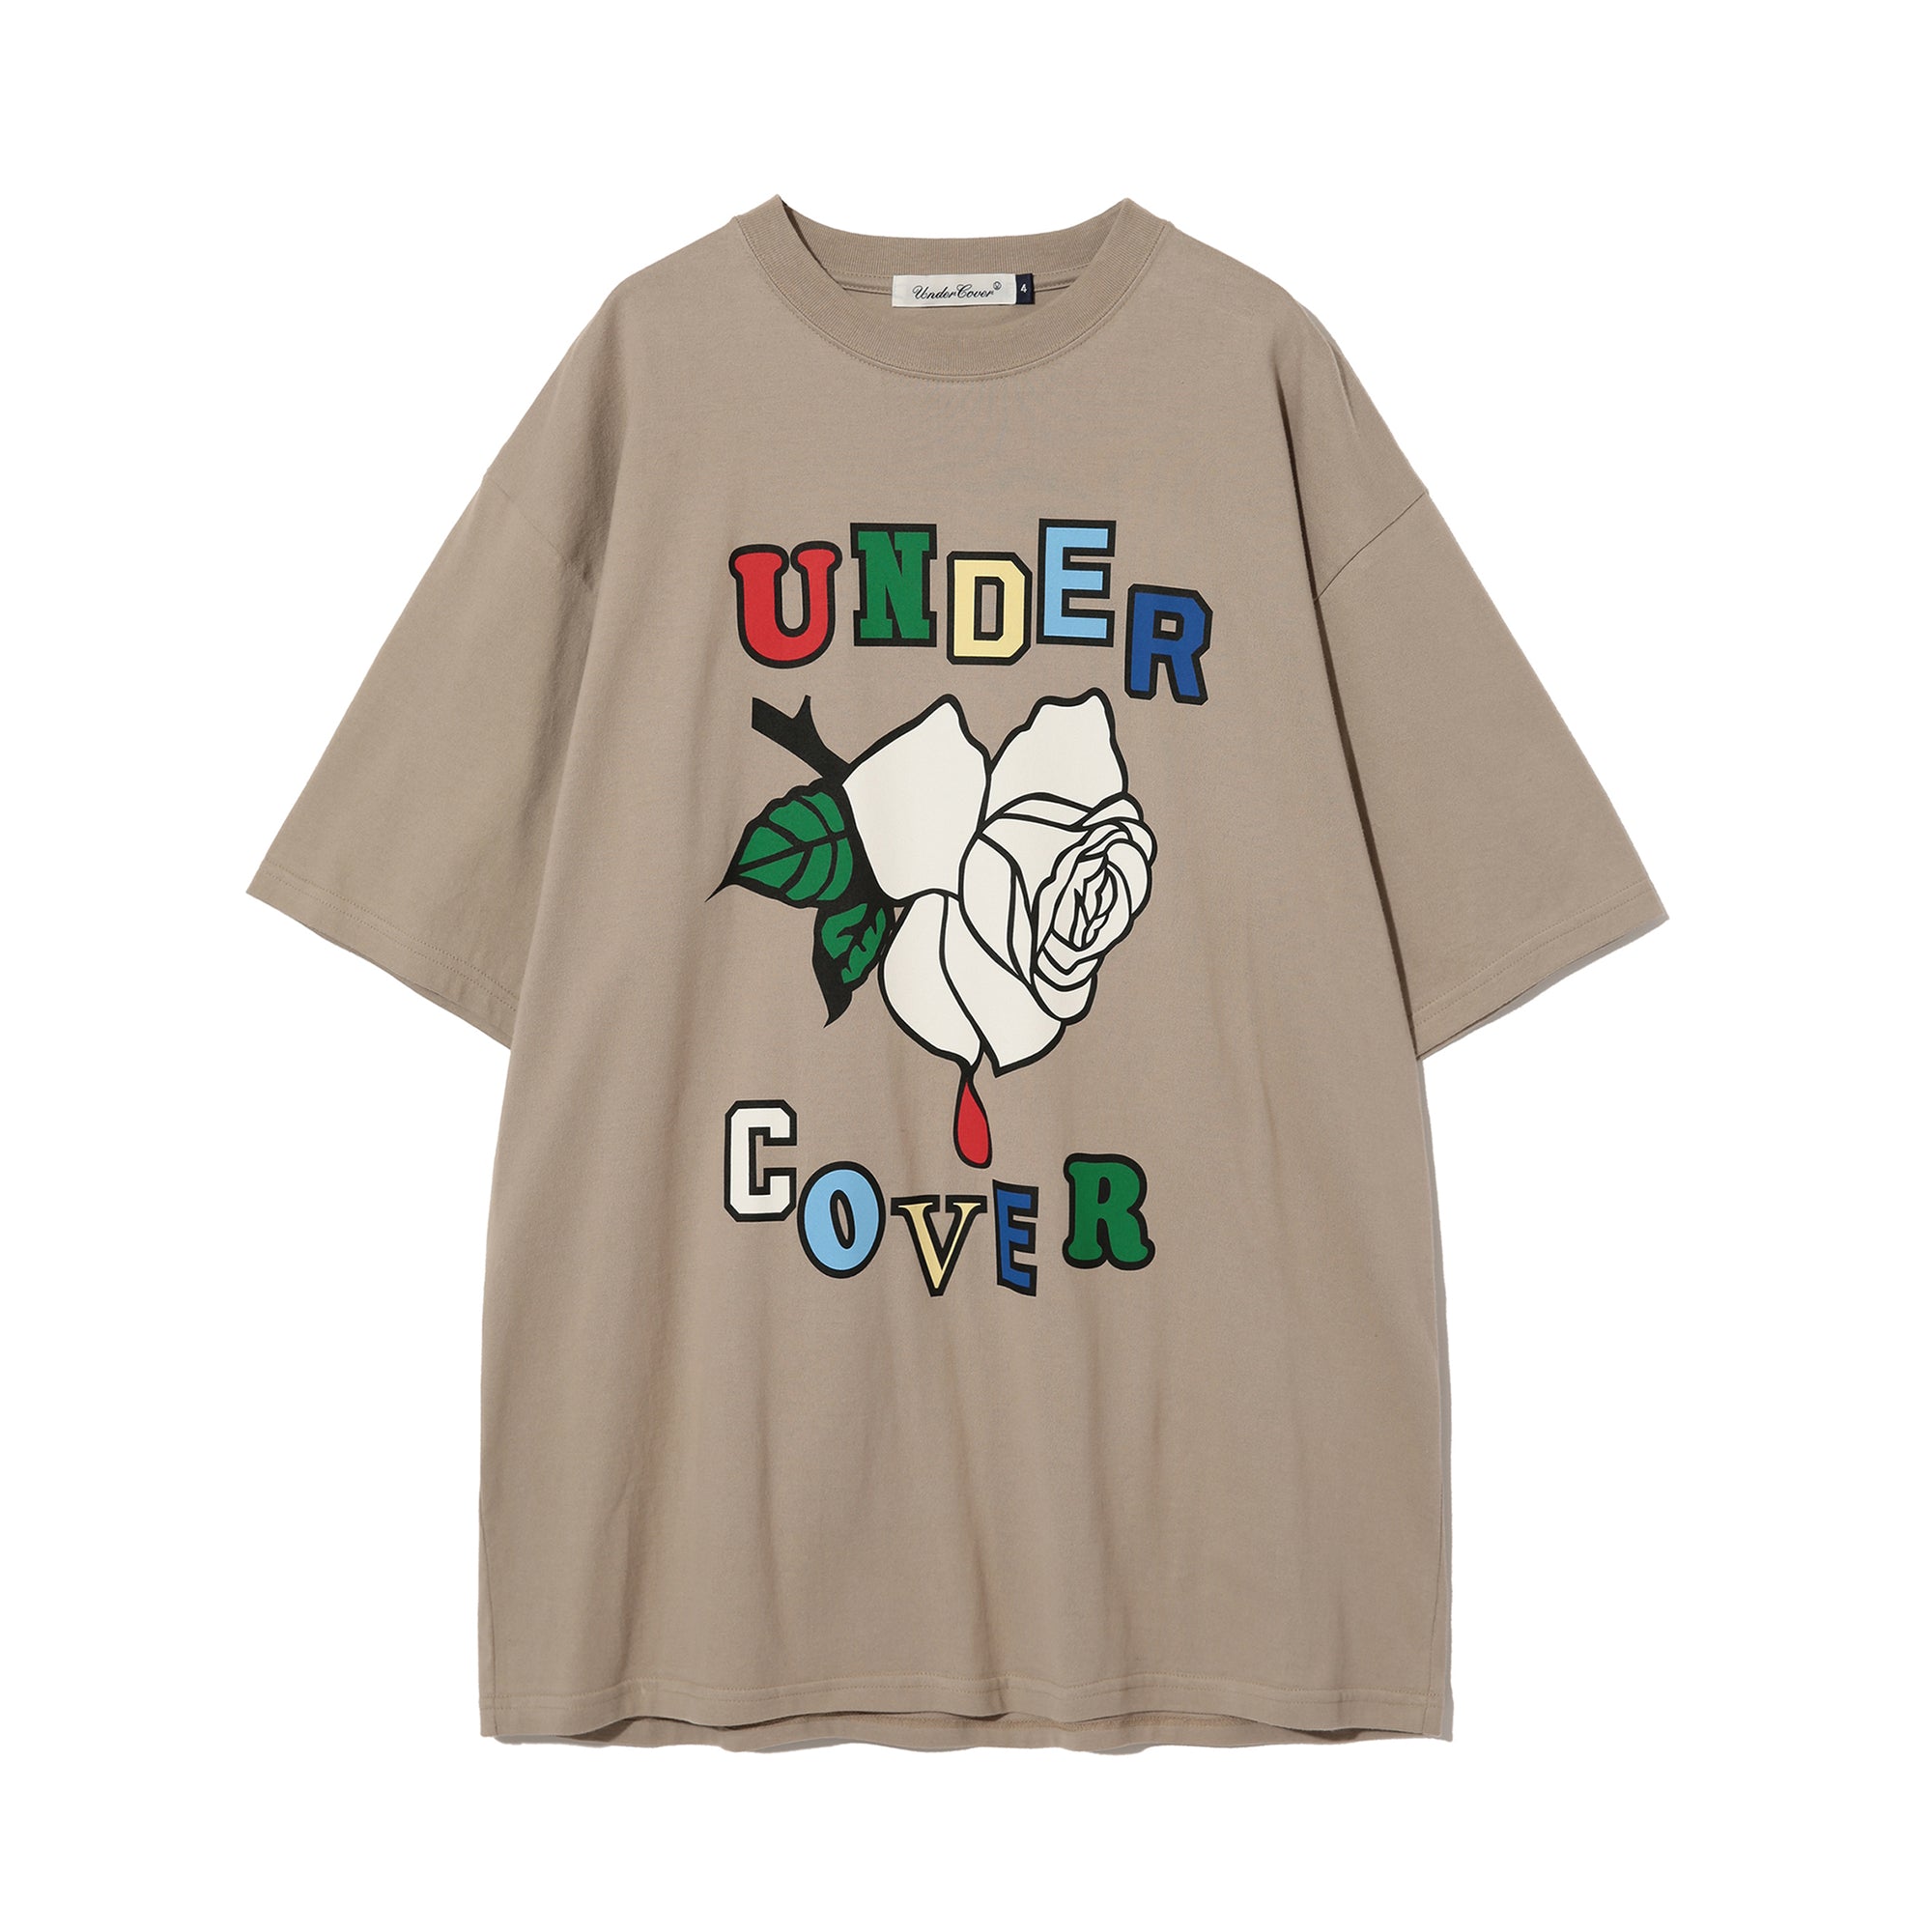 Undercover - Men's T-Shirt - (Beige) view 1